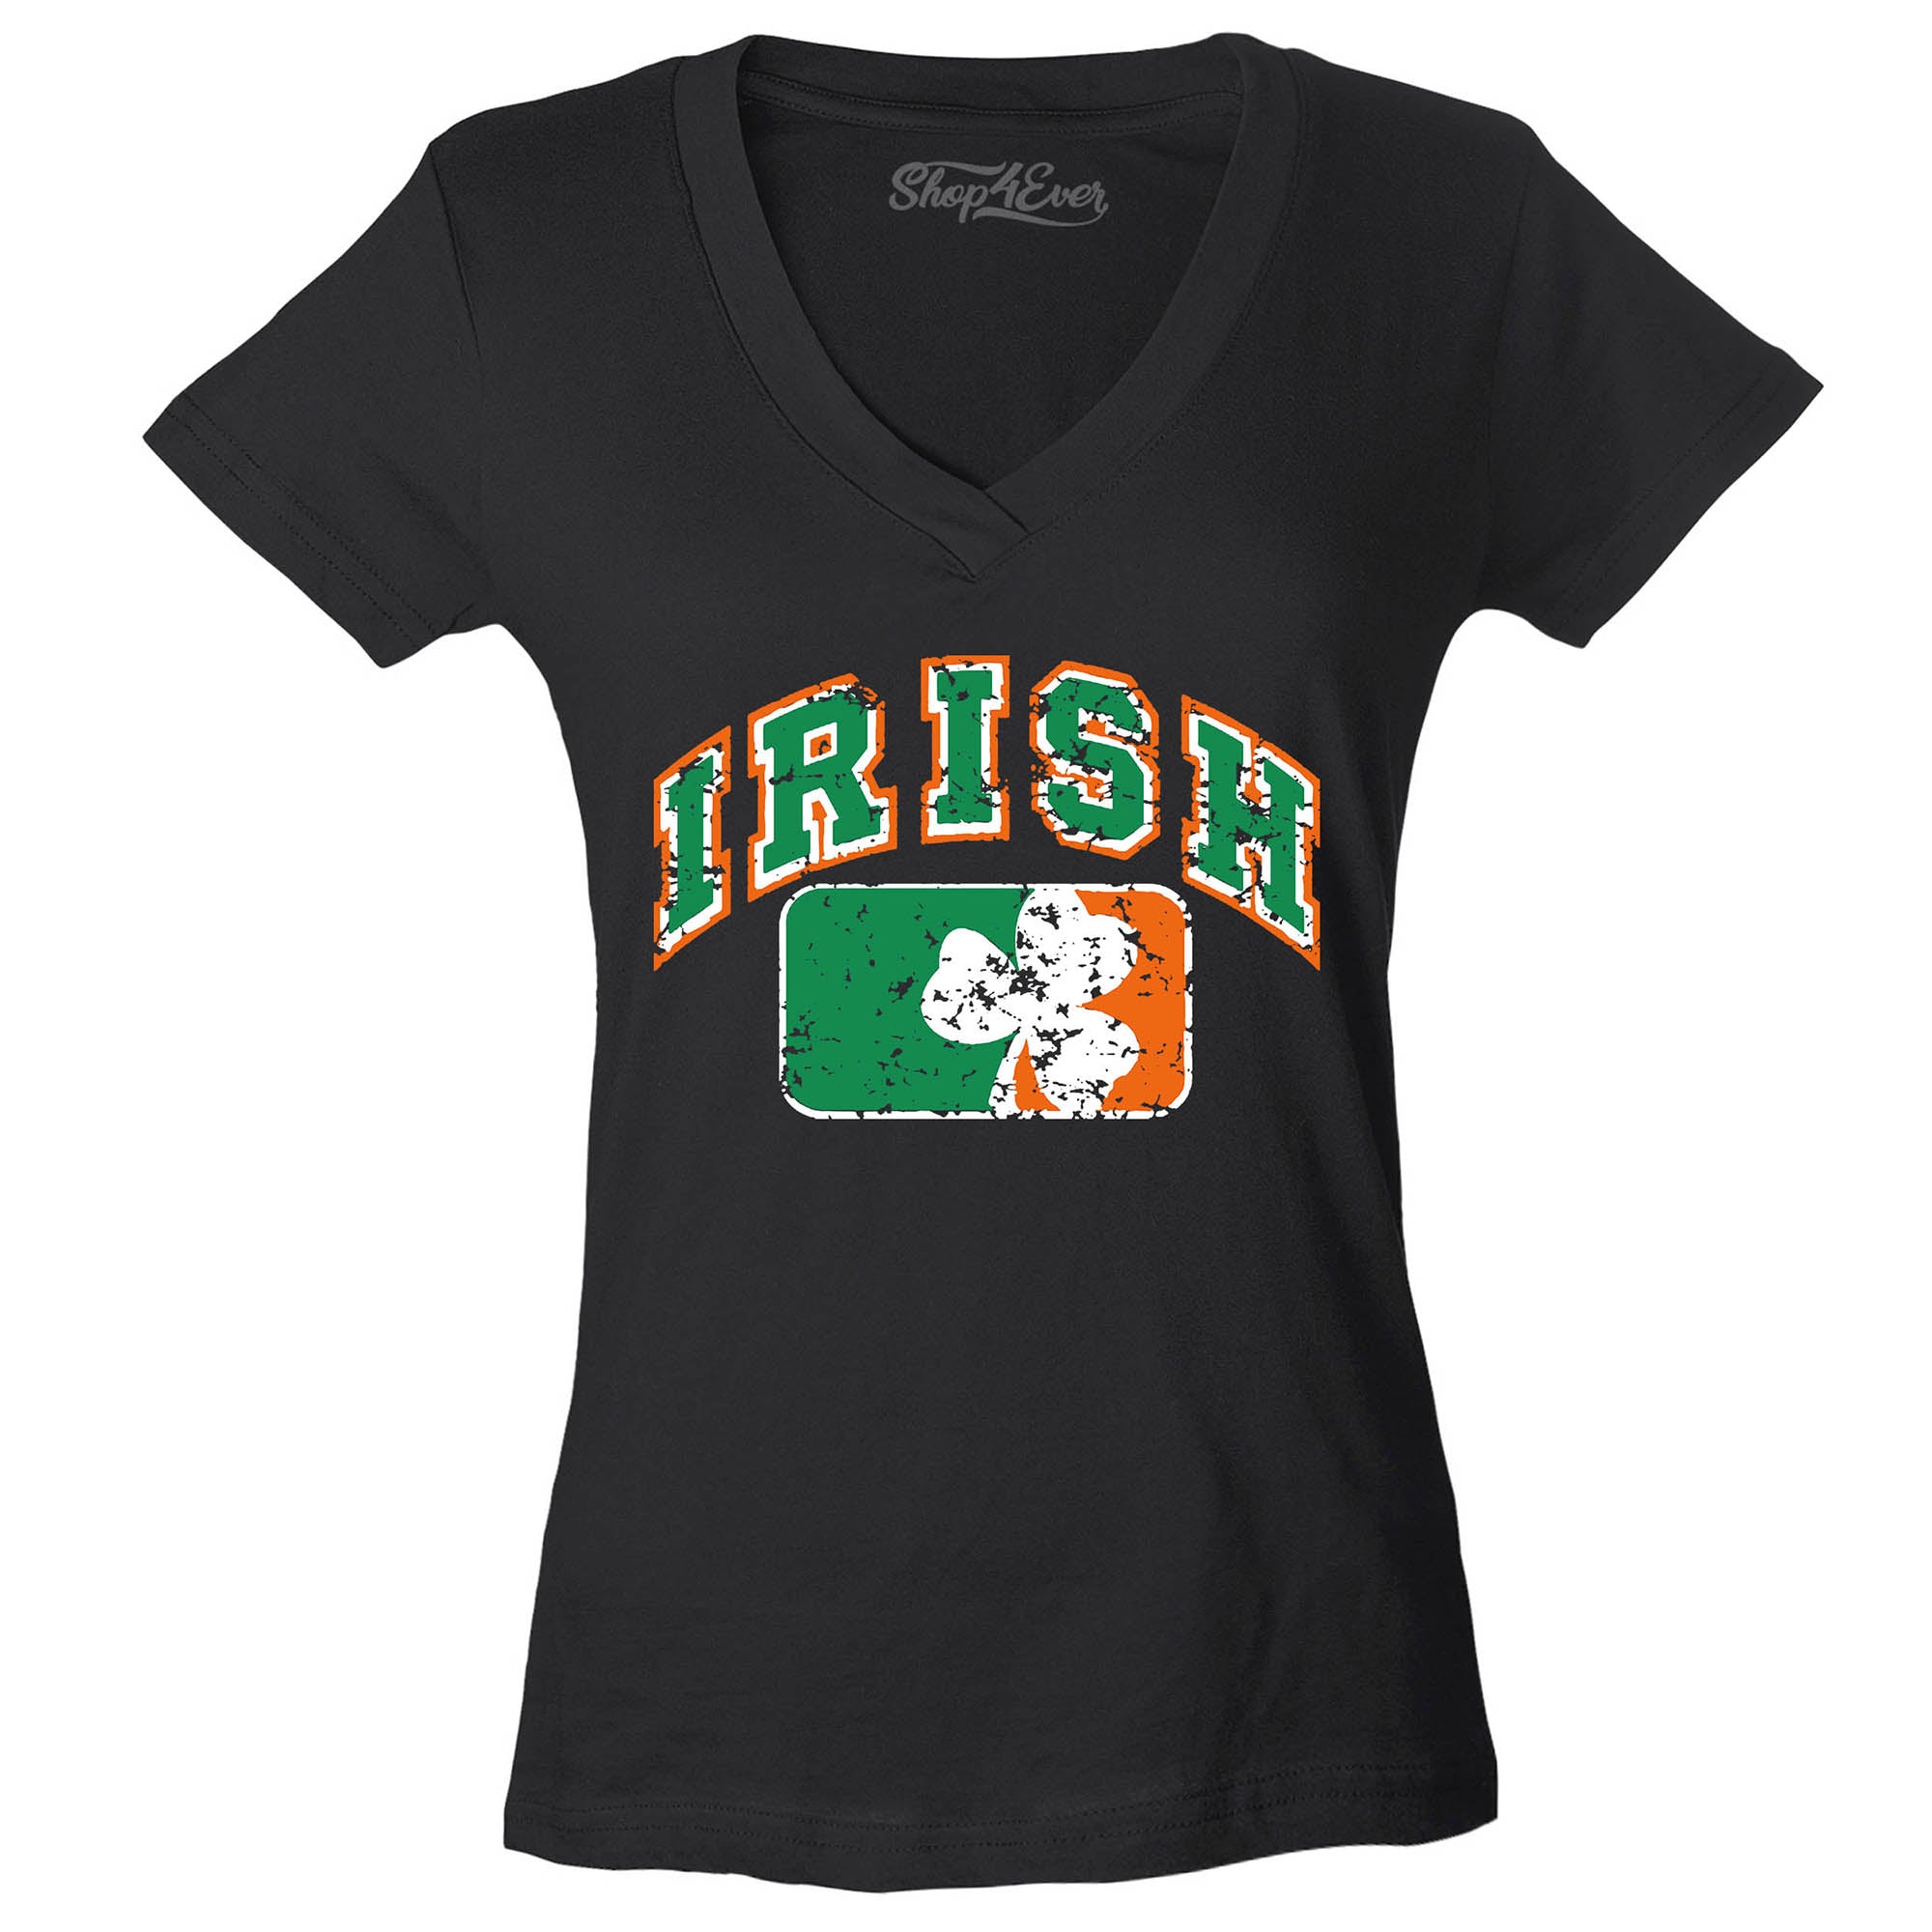 Vintage Irish Flag Shamrock Women's V-Neck T-Shirt St. Patrick's Day Shirts Slim FIT